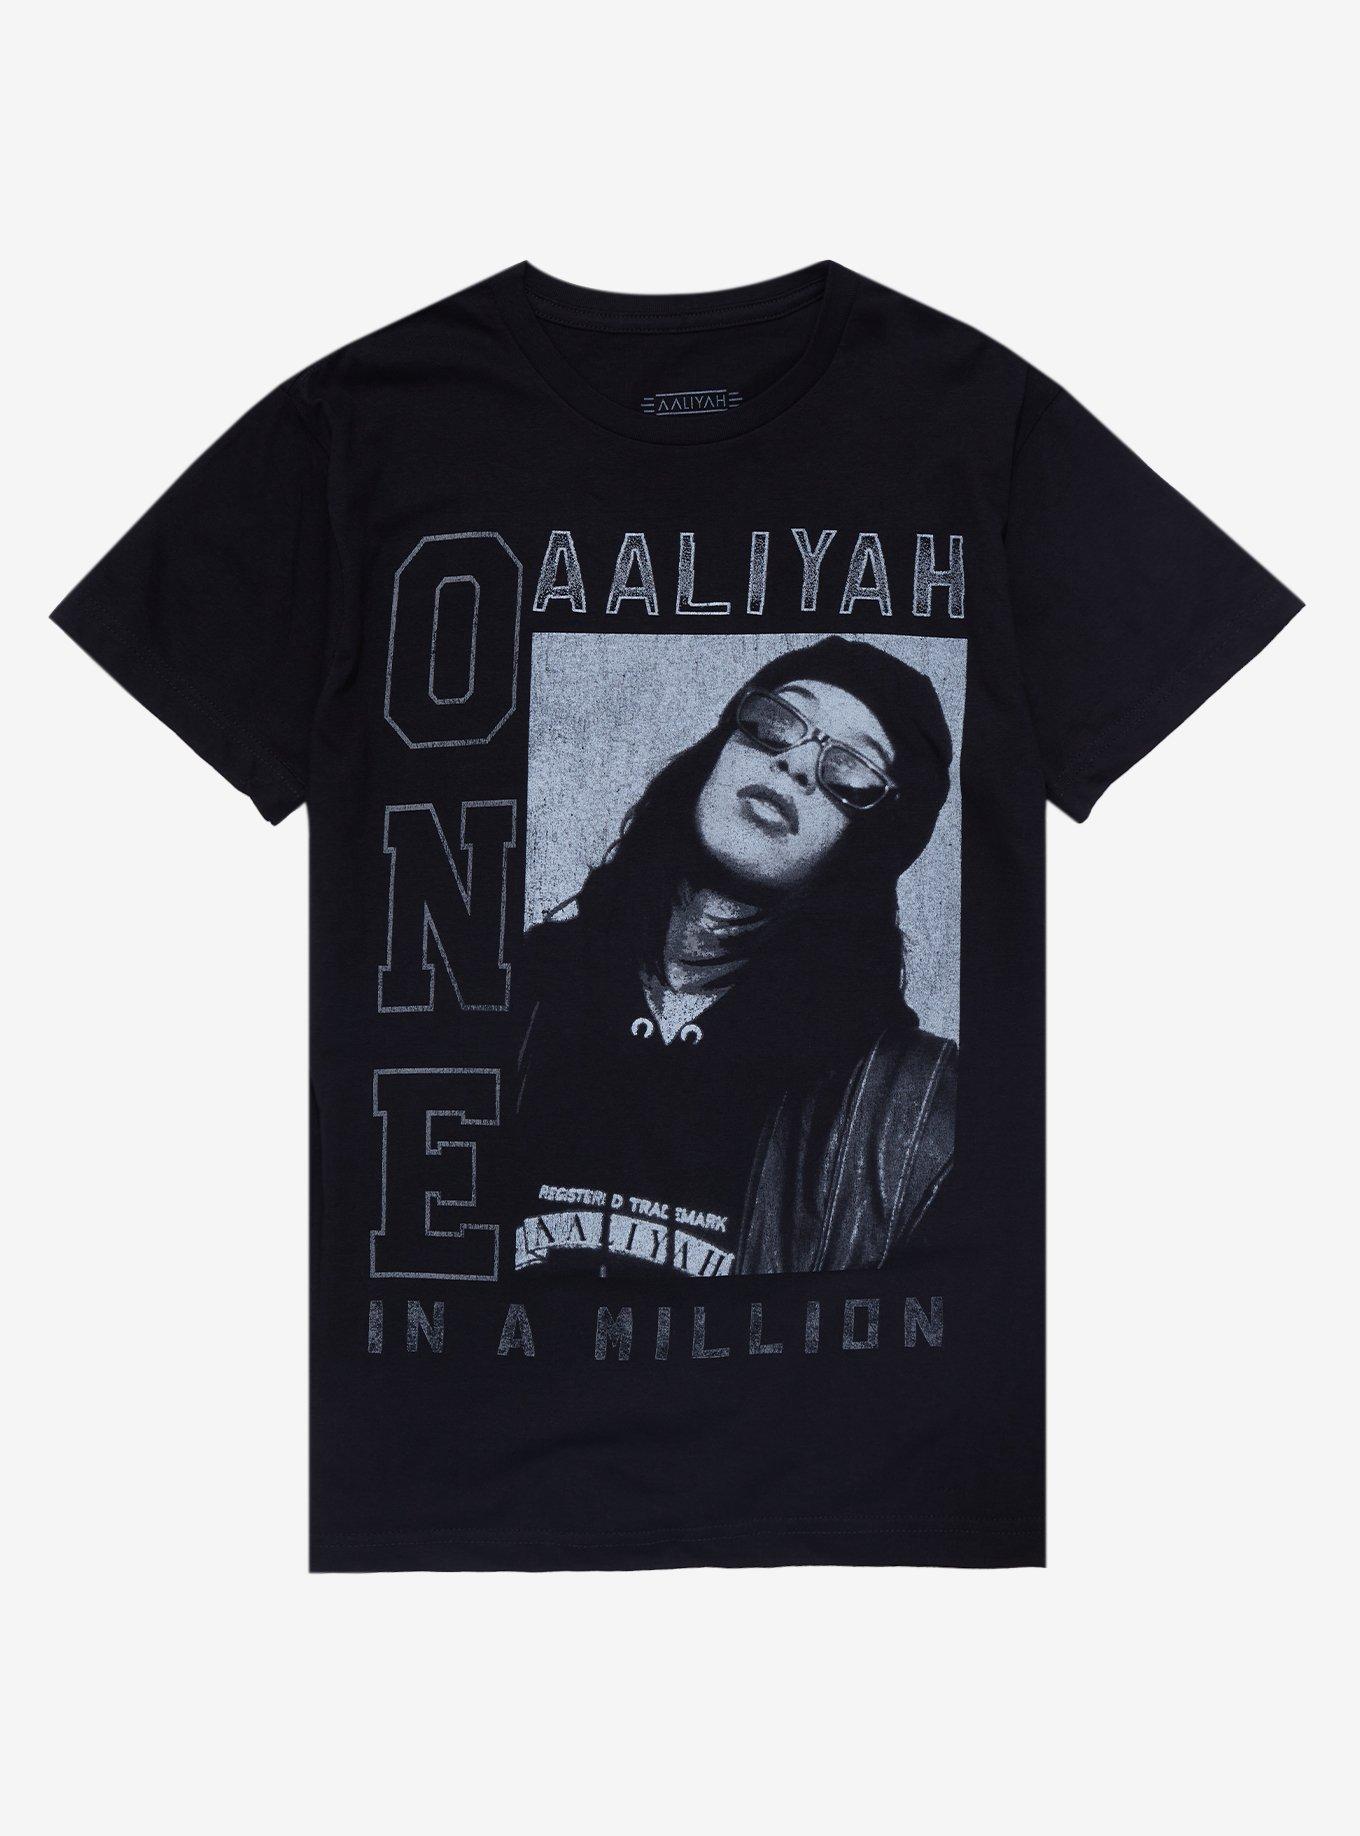 Aaliyah Shirt - Official Aaliyah Shirt Store